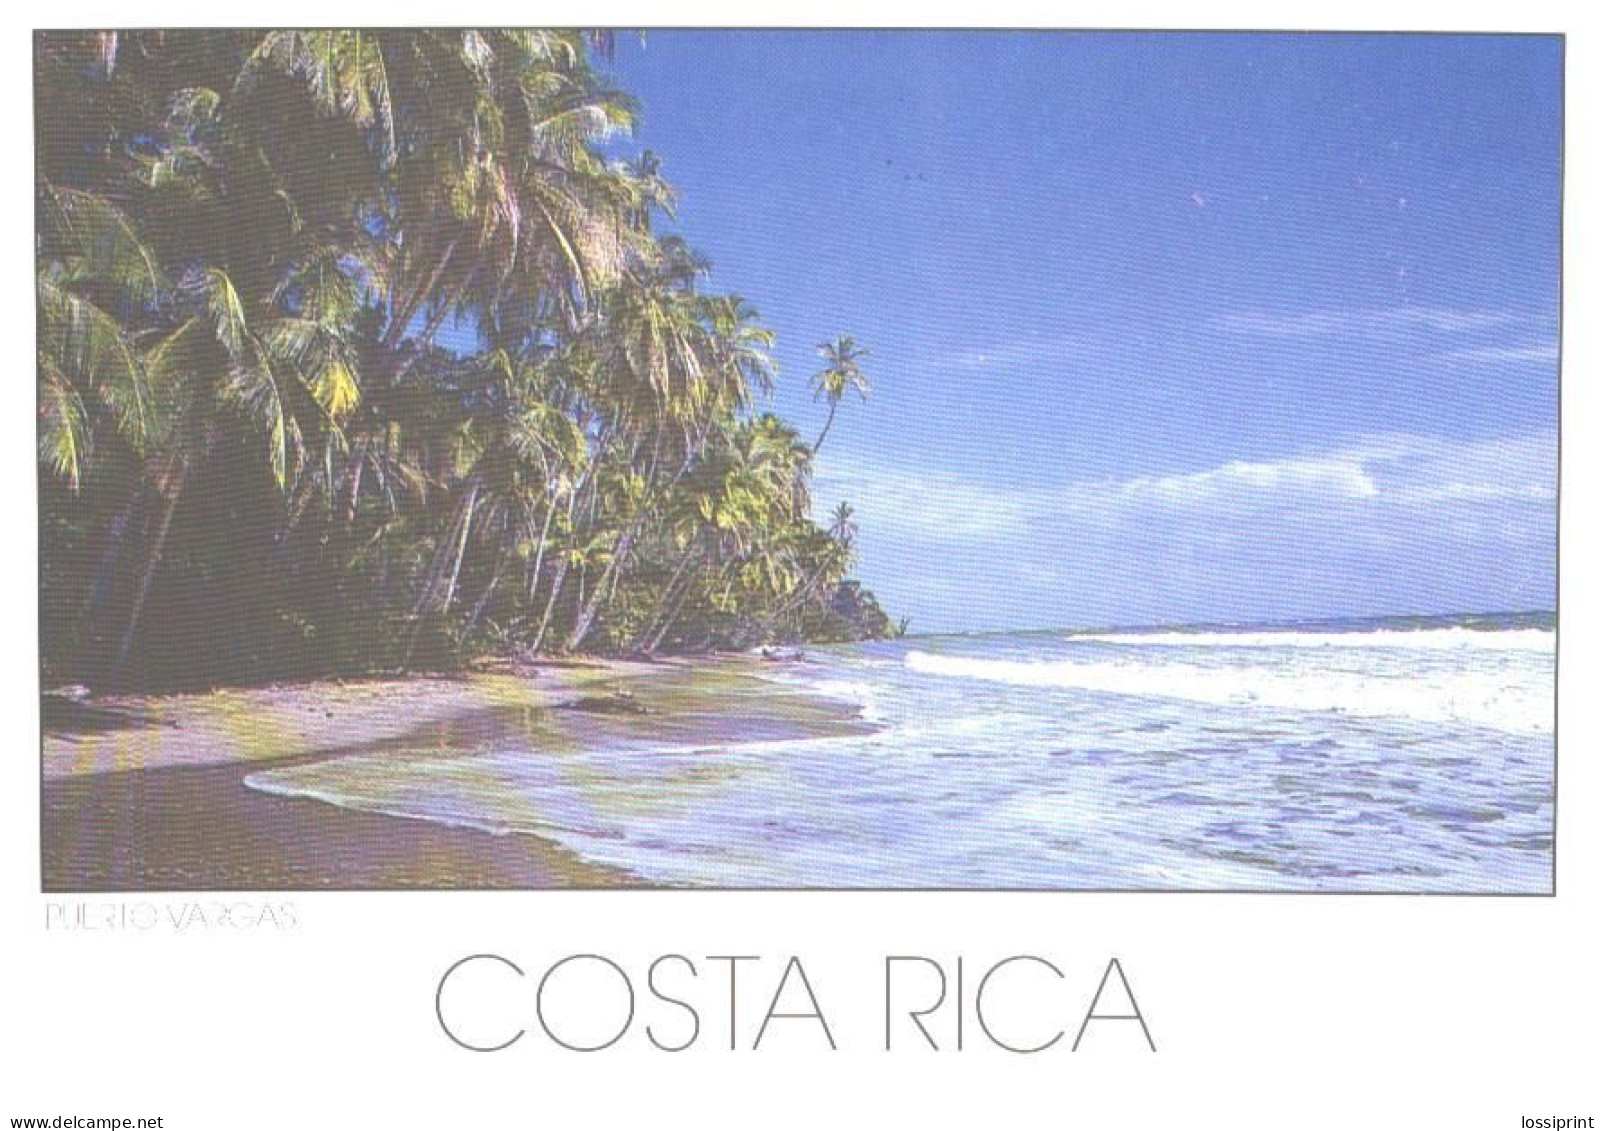 Costa Rica:Limon, Cahuita National Park, Puerto Vargas - Costa Rica